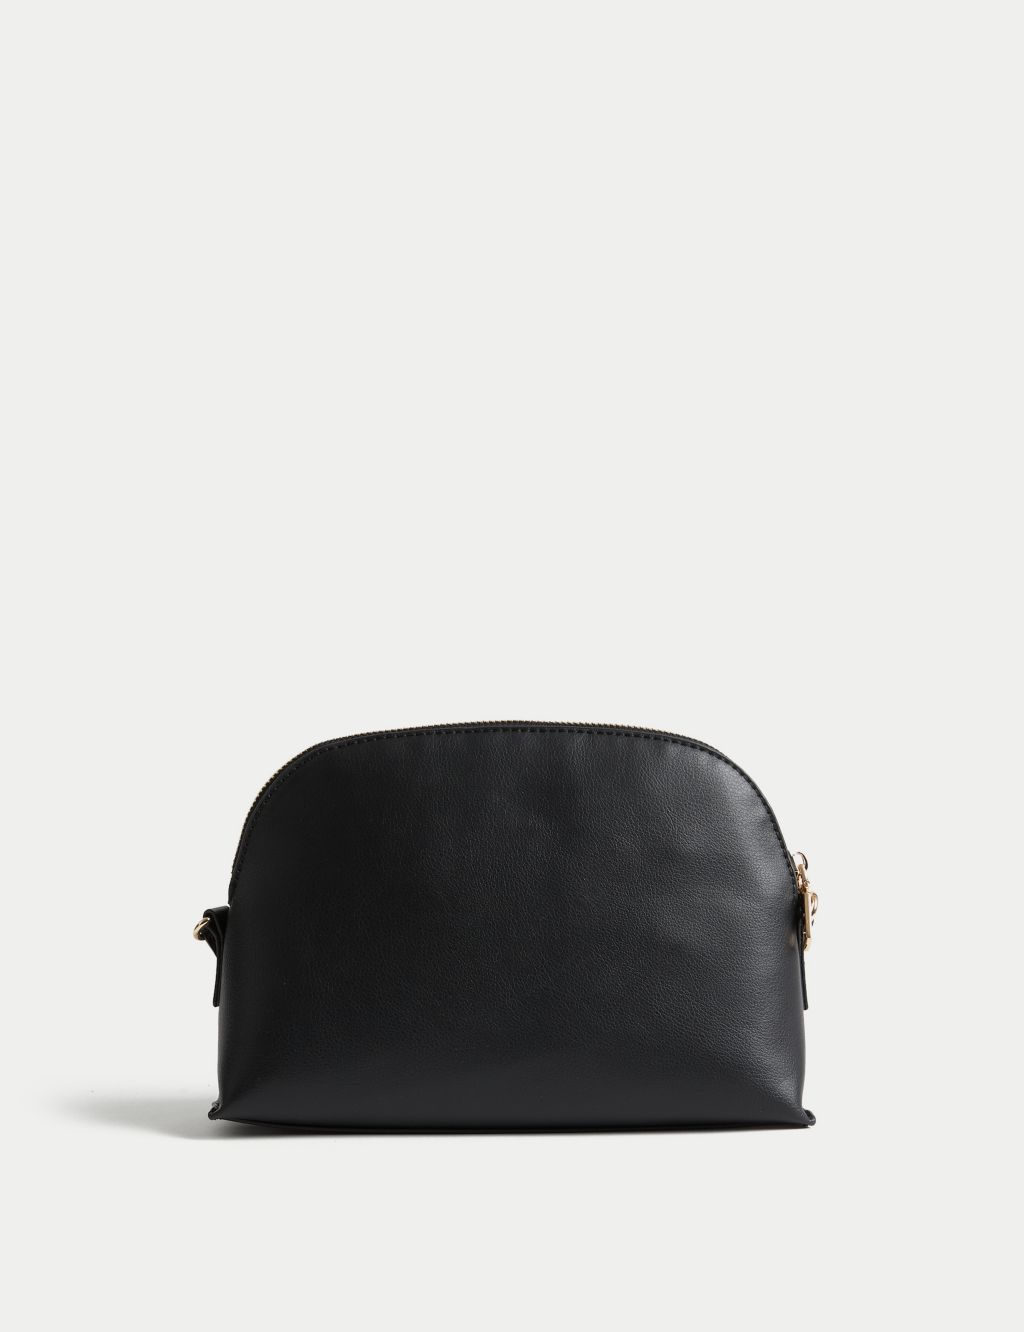 authentic black chanel bag vintage